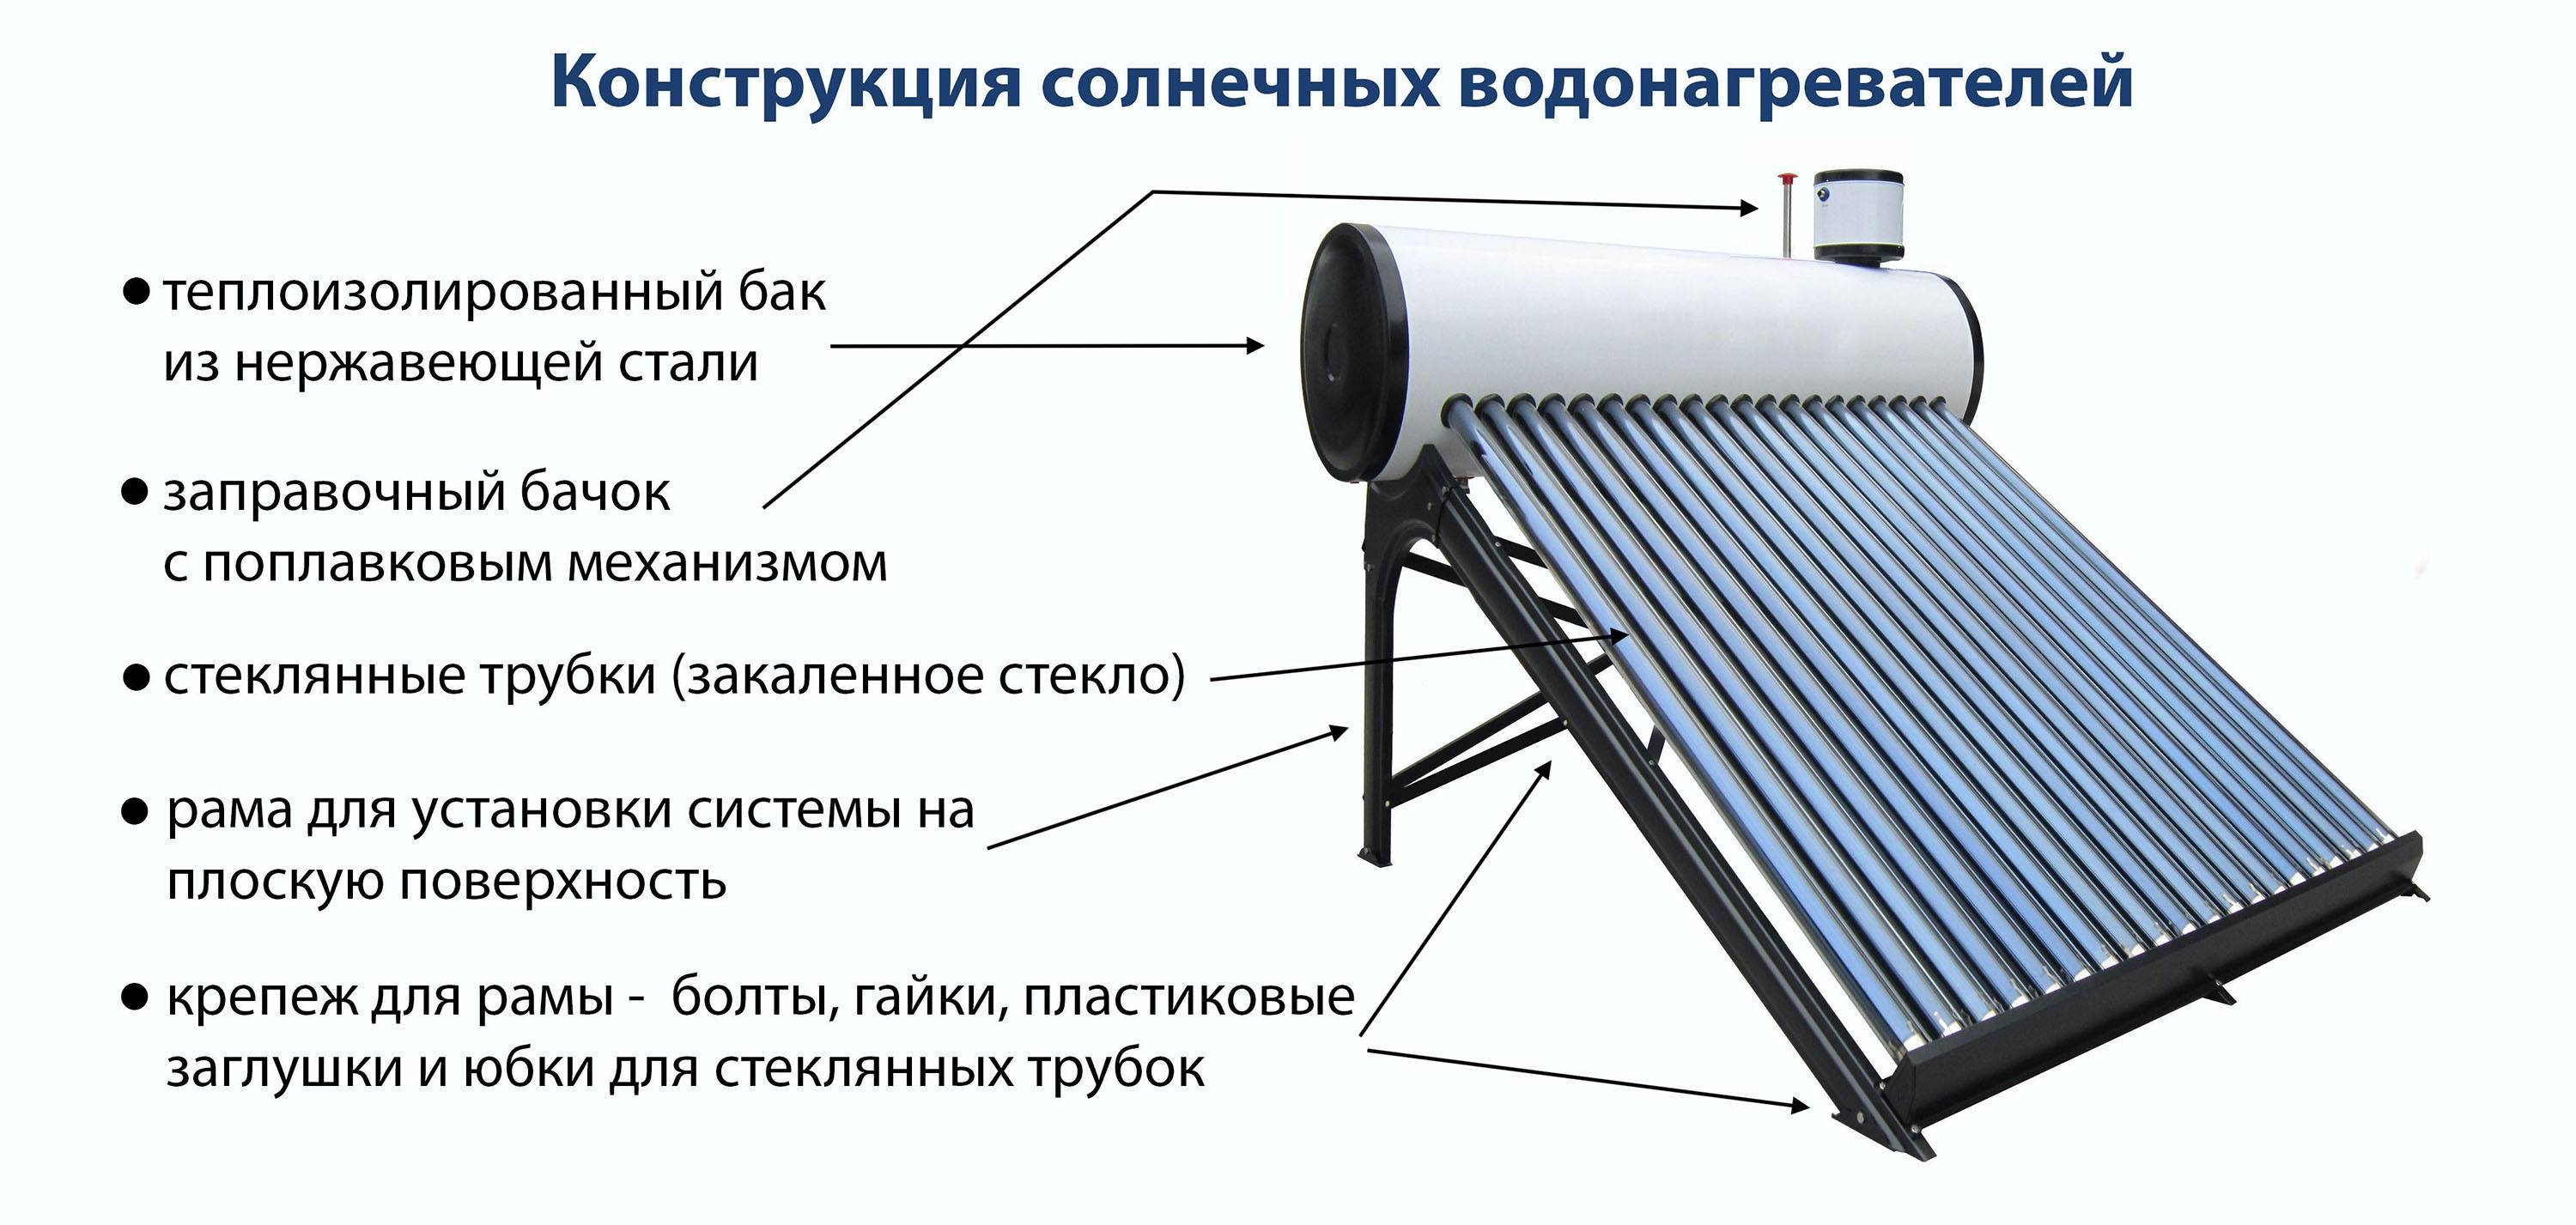 Как сделать солнечный бойлер (водонагреватель) своими руками из металлопластика, шланга, холодильника и вакуумных трубок?